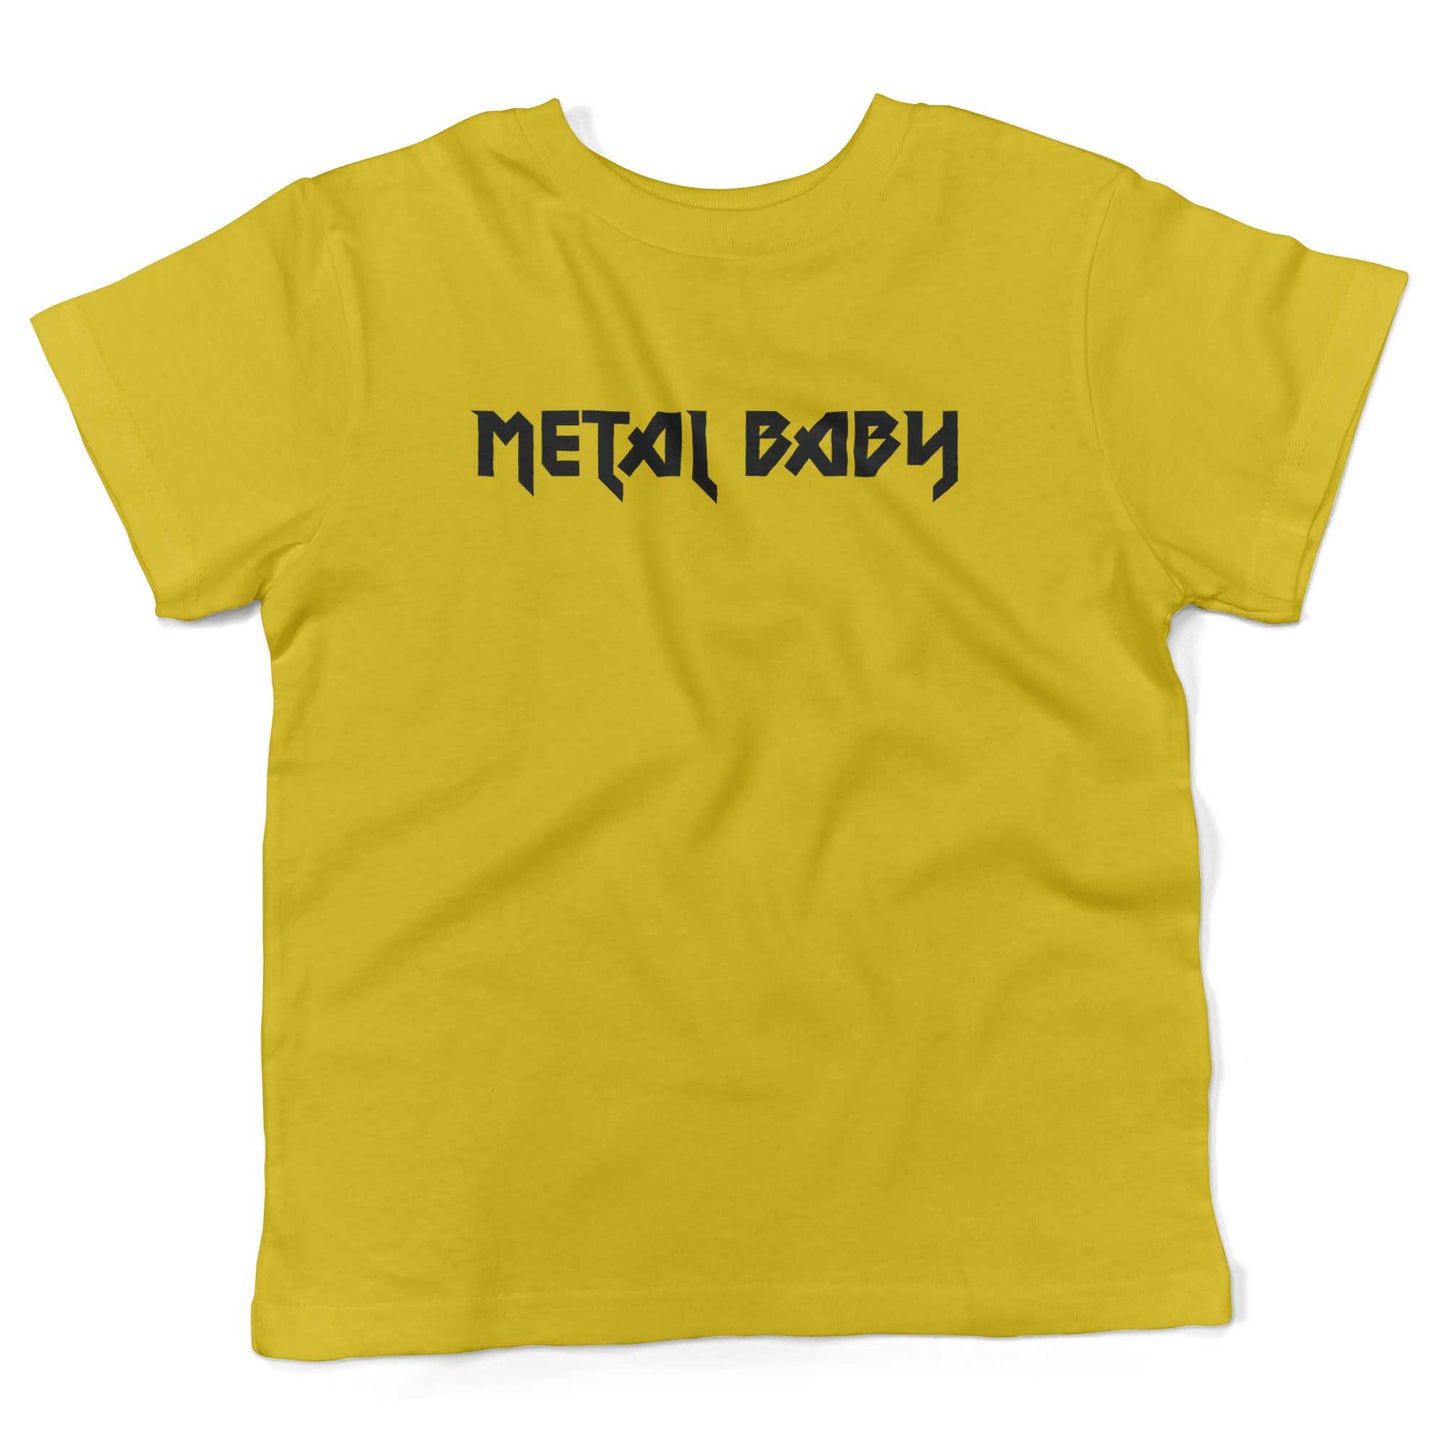 Metal Baby Toddler Shirt-Sunshine Yellow-2T